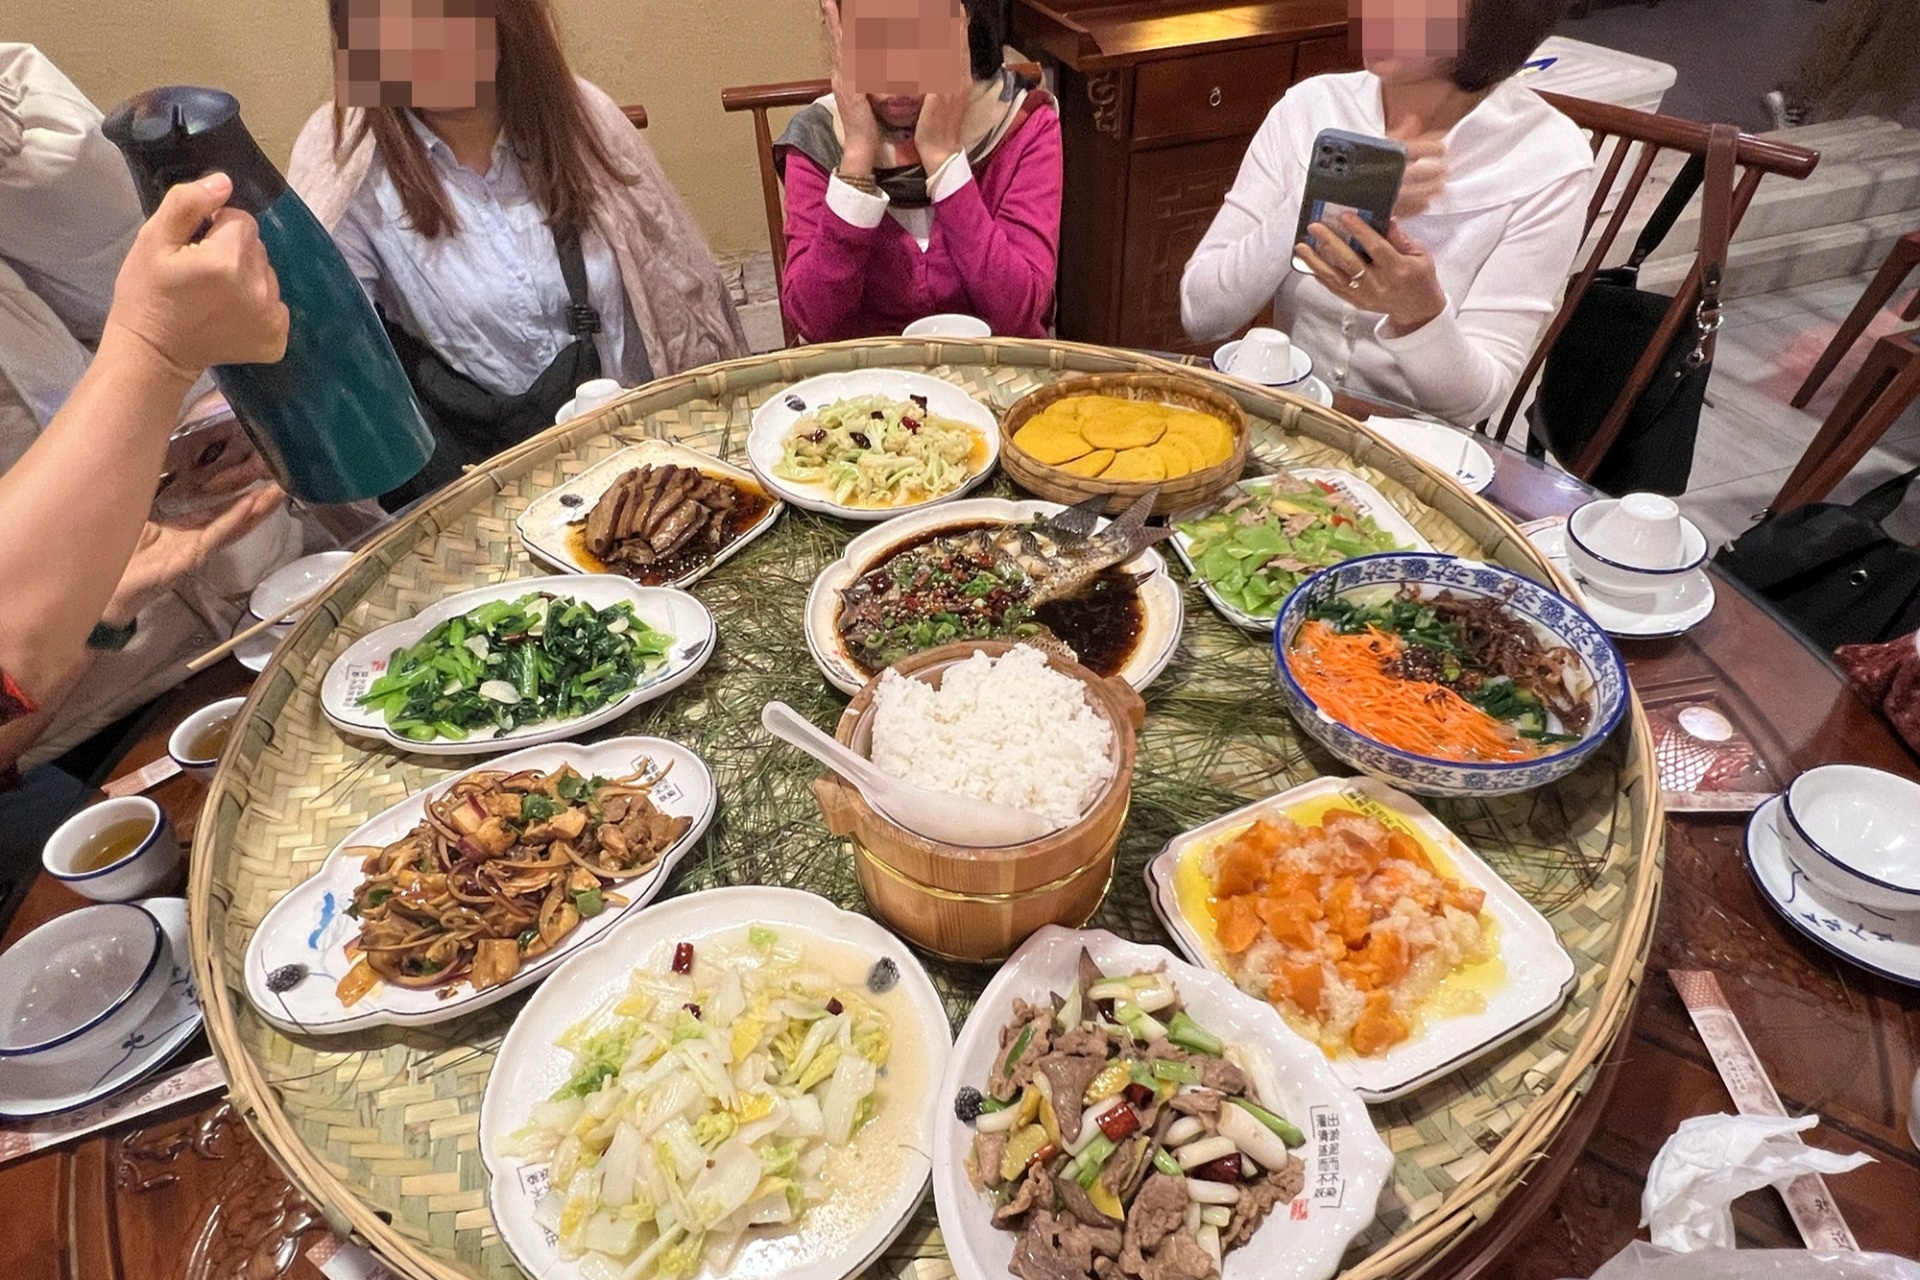 Bữa cơm rau nhiều hơn thịt trong một tour Trung Quốc giá rẻ của khách Việt (Ảnh: Nhân vật cung cấp).